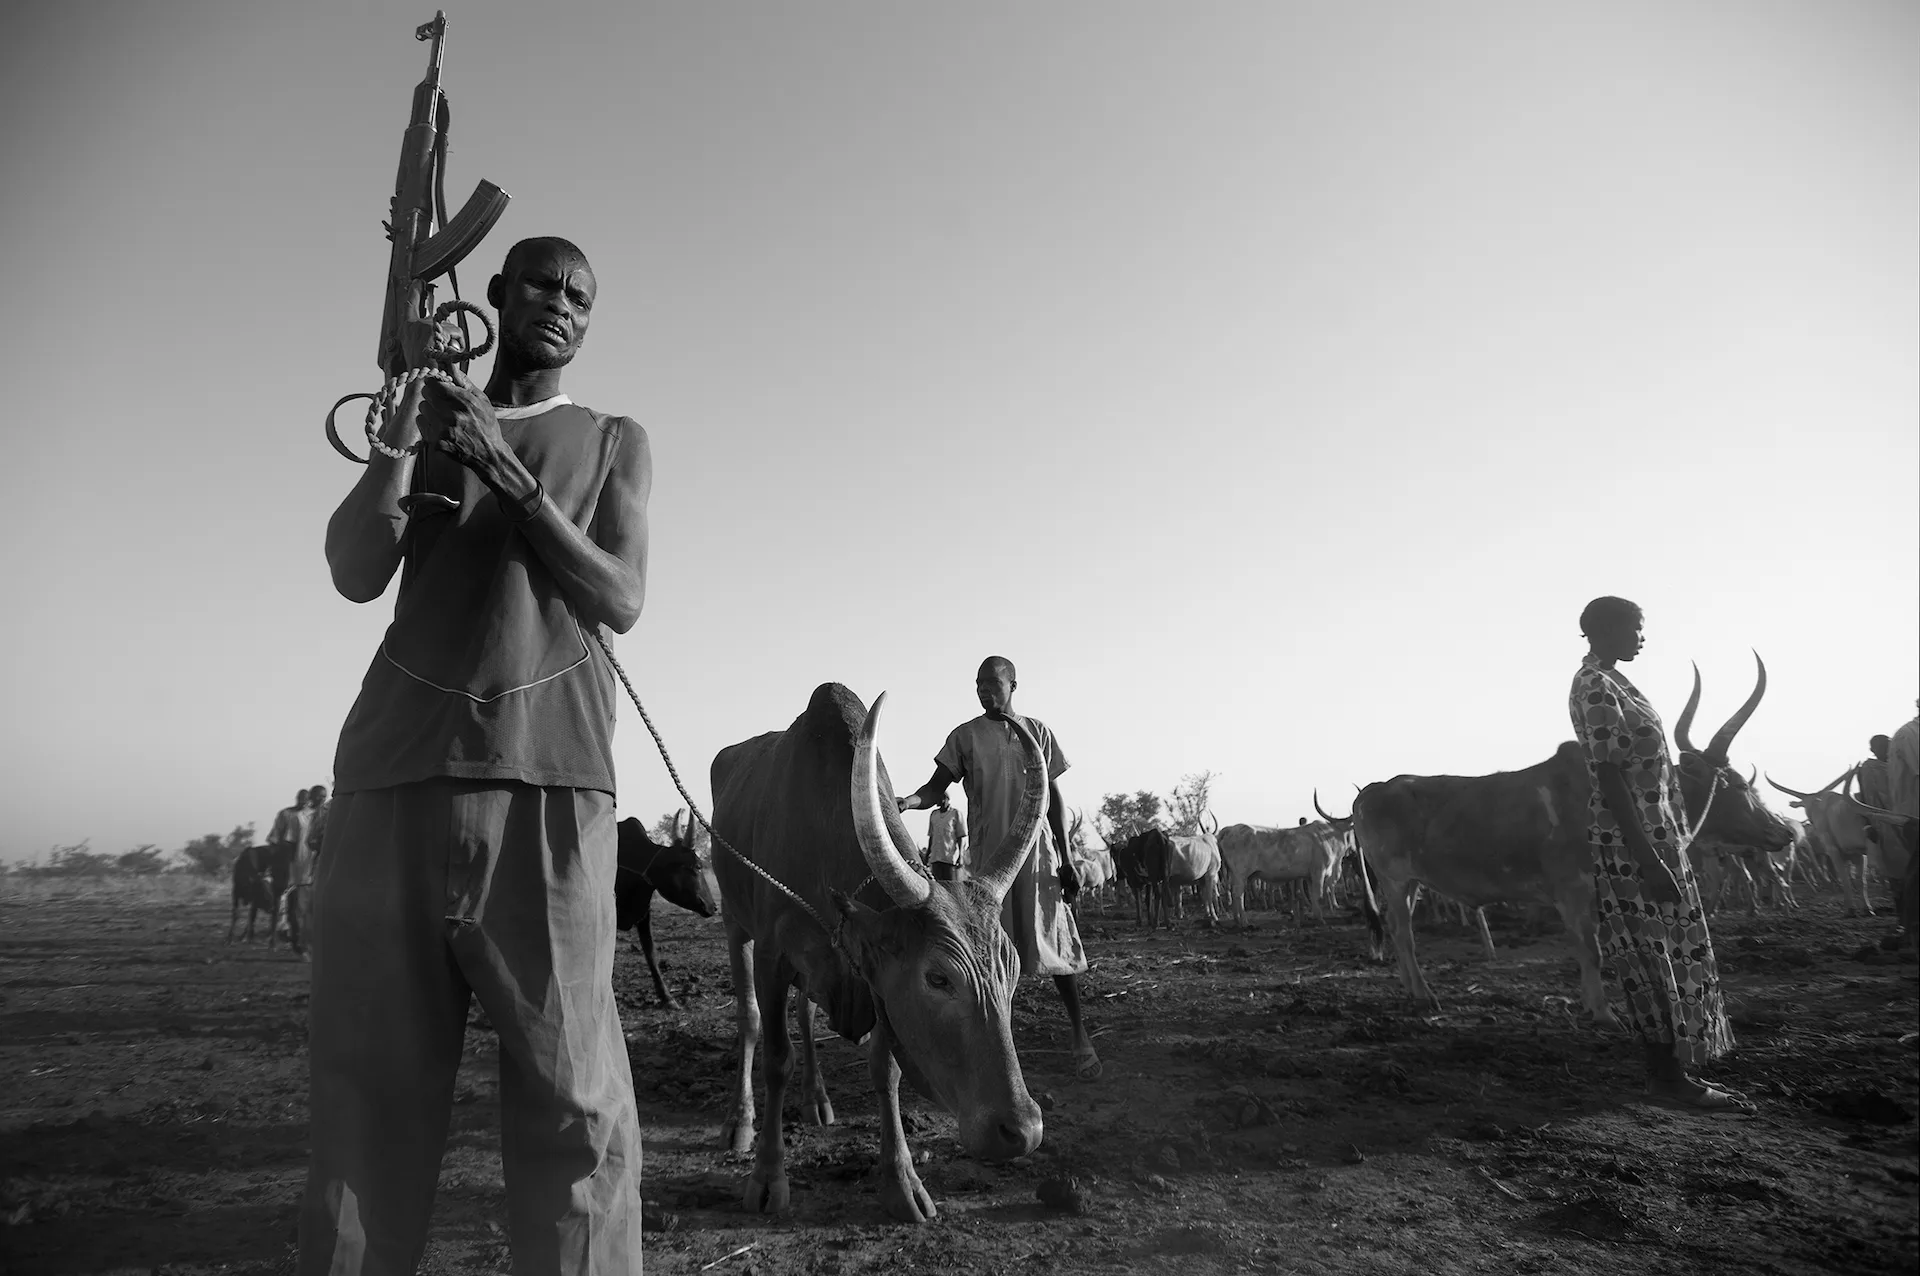 Sudan del Sur. Región de Gogrial Oriental. Un grupo de pastores guerreros nómadas de etnia Dinka atraviesa la aldea de Dubek con sus familias. Migraciones climáticas / Foto: Alfons Rodríguez